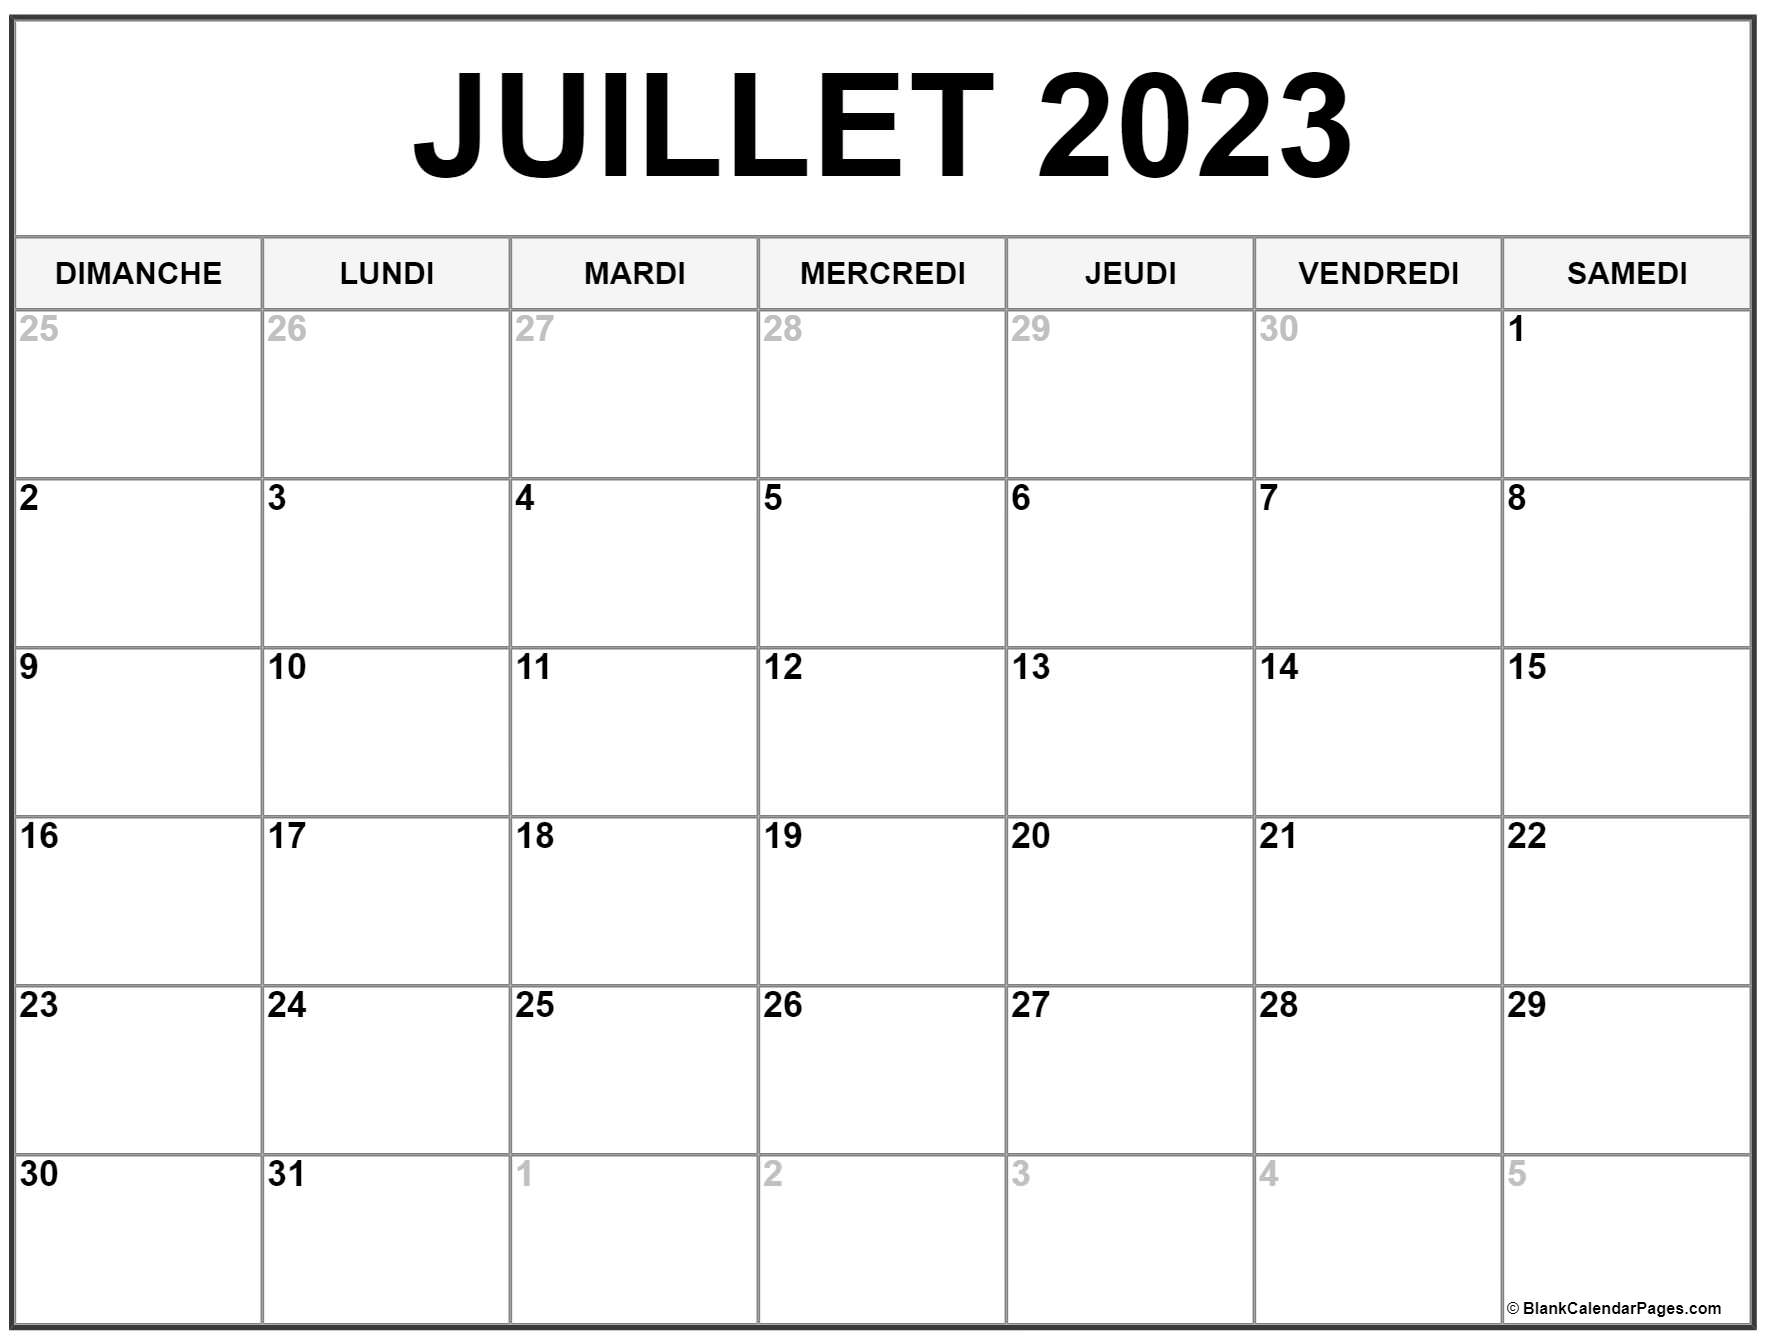 Calendrier Juillet 2023 à Imprimer Icalendrier Images And Photos Finder